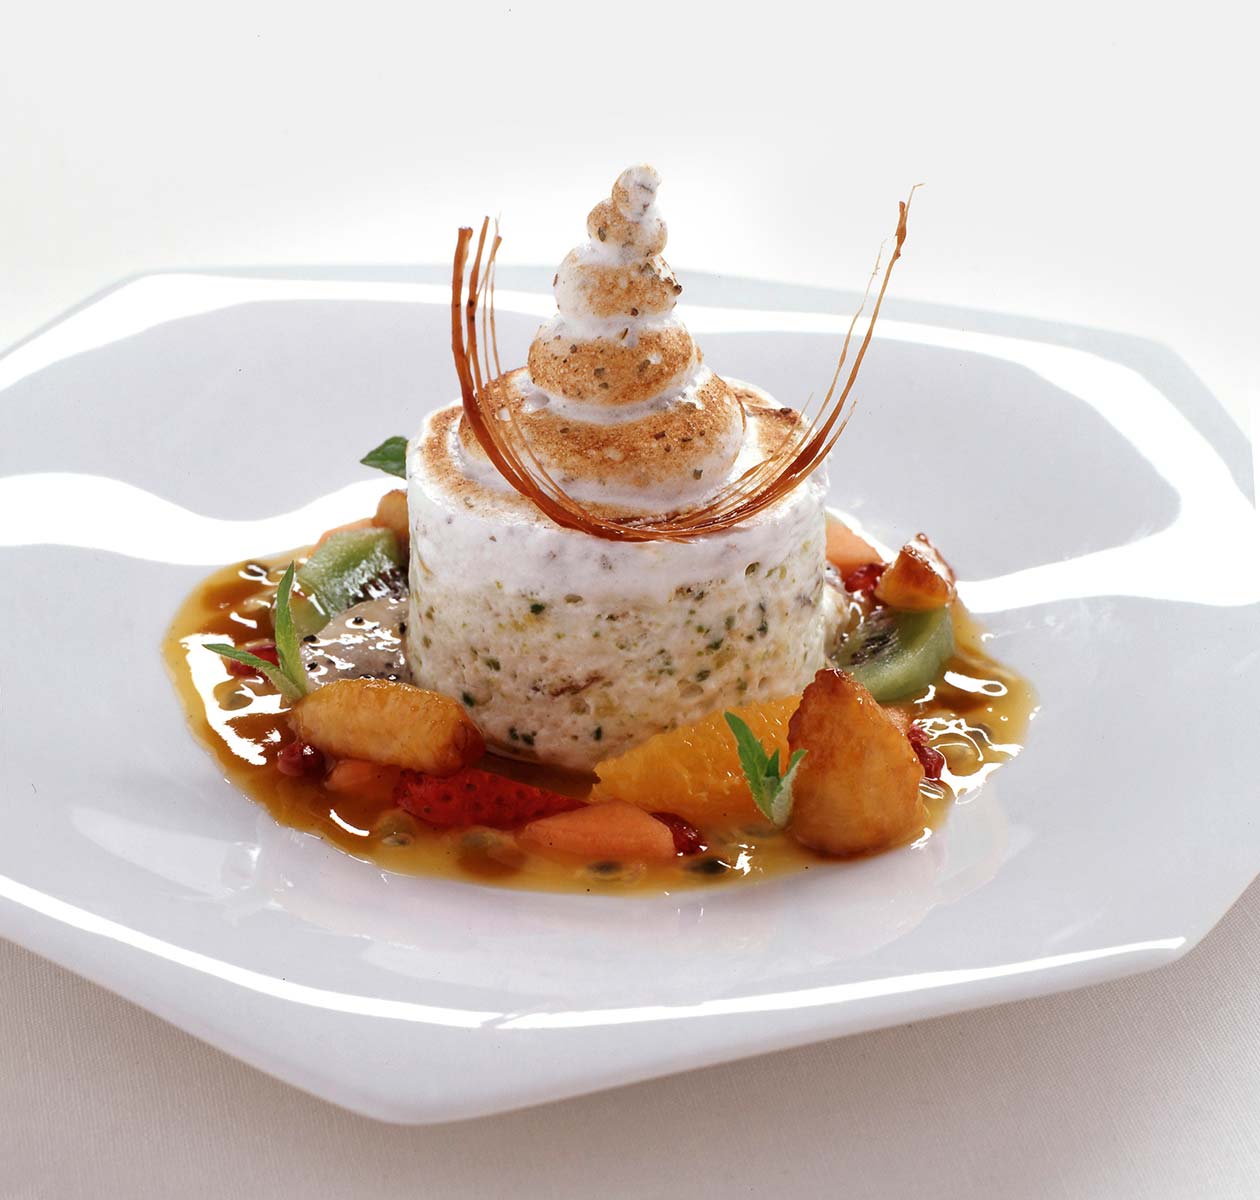 In diesem Bild erkennt man ein Dessert von Schlossberg. Das Dessert ist eine weiße Mousseline, diese wurde in der Mitte des Tellers platziert. Das Mousseline befindet sich in einem Obstsalat mit Soße, bestehend aus Kiwi, Orange, Erdbeere, Melone.